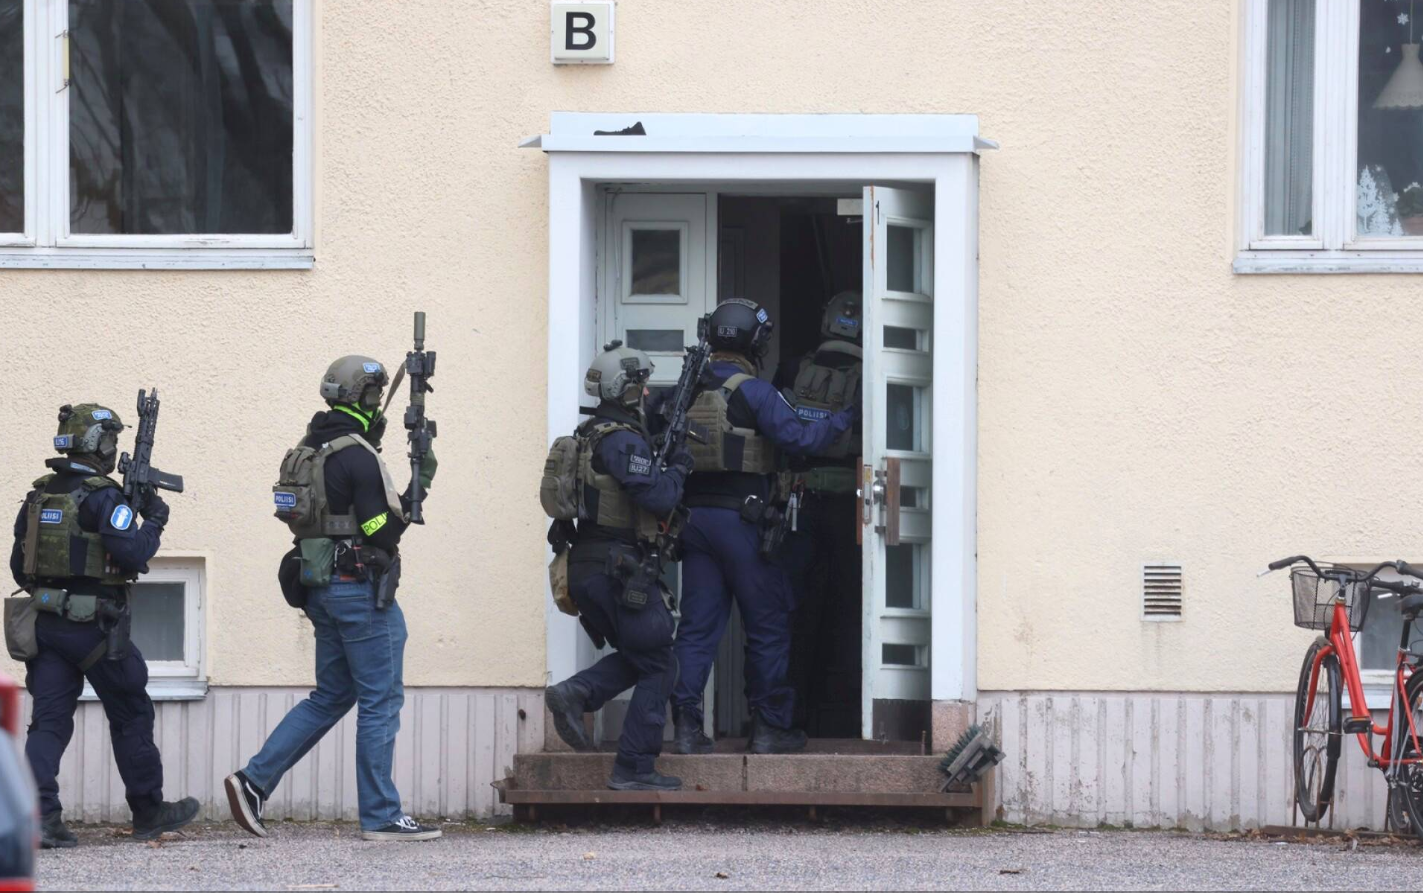 Озброєні співробітники міліції увійшли до будівлі школи. Стрілянина відбувалася в сусідній будівлі / ФОТО: SEPPO KÄRKI / HS